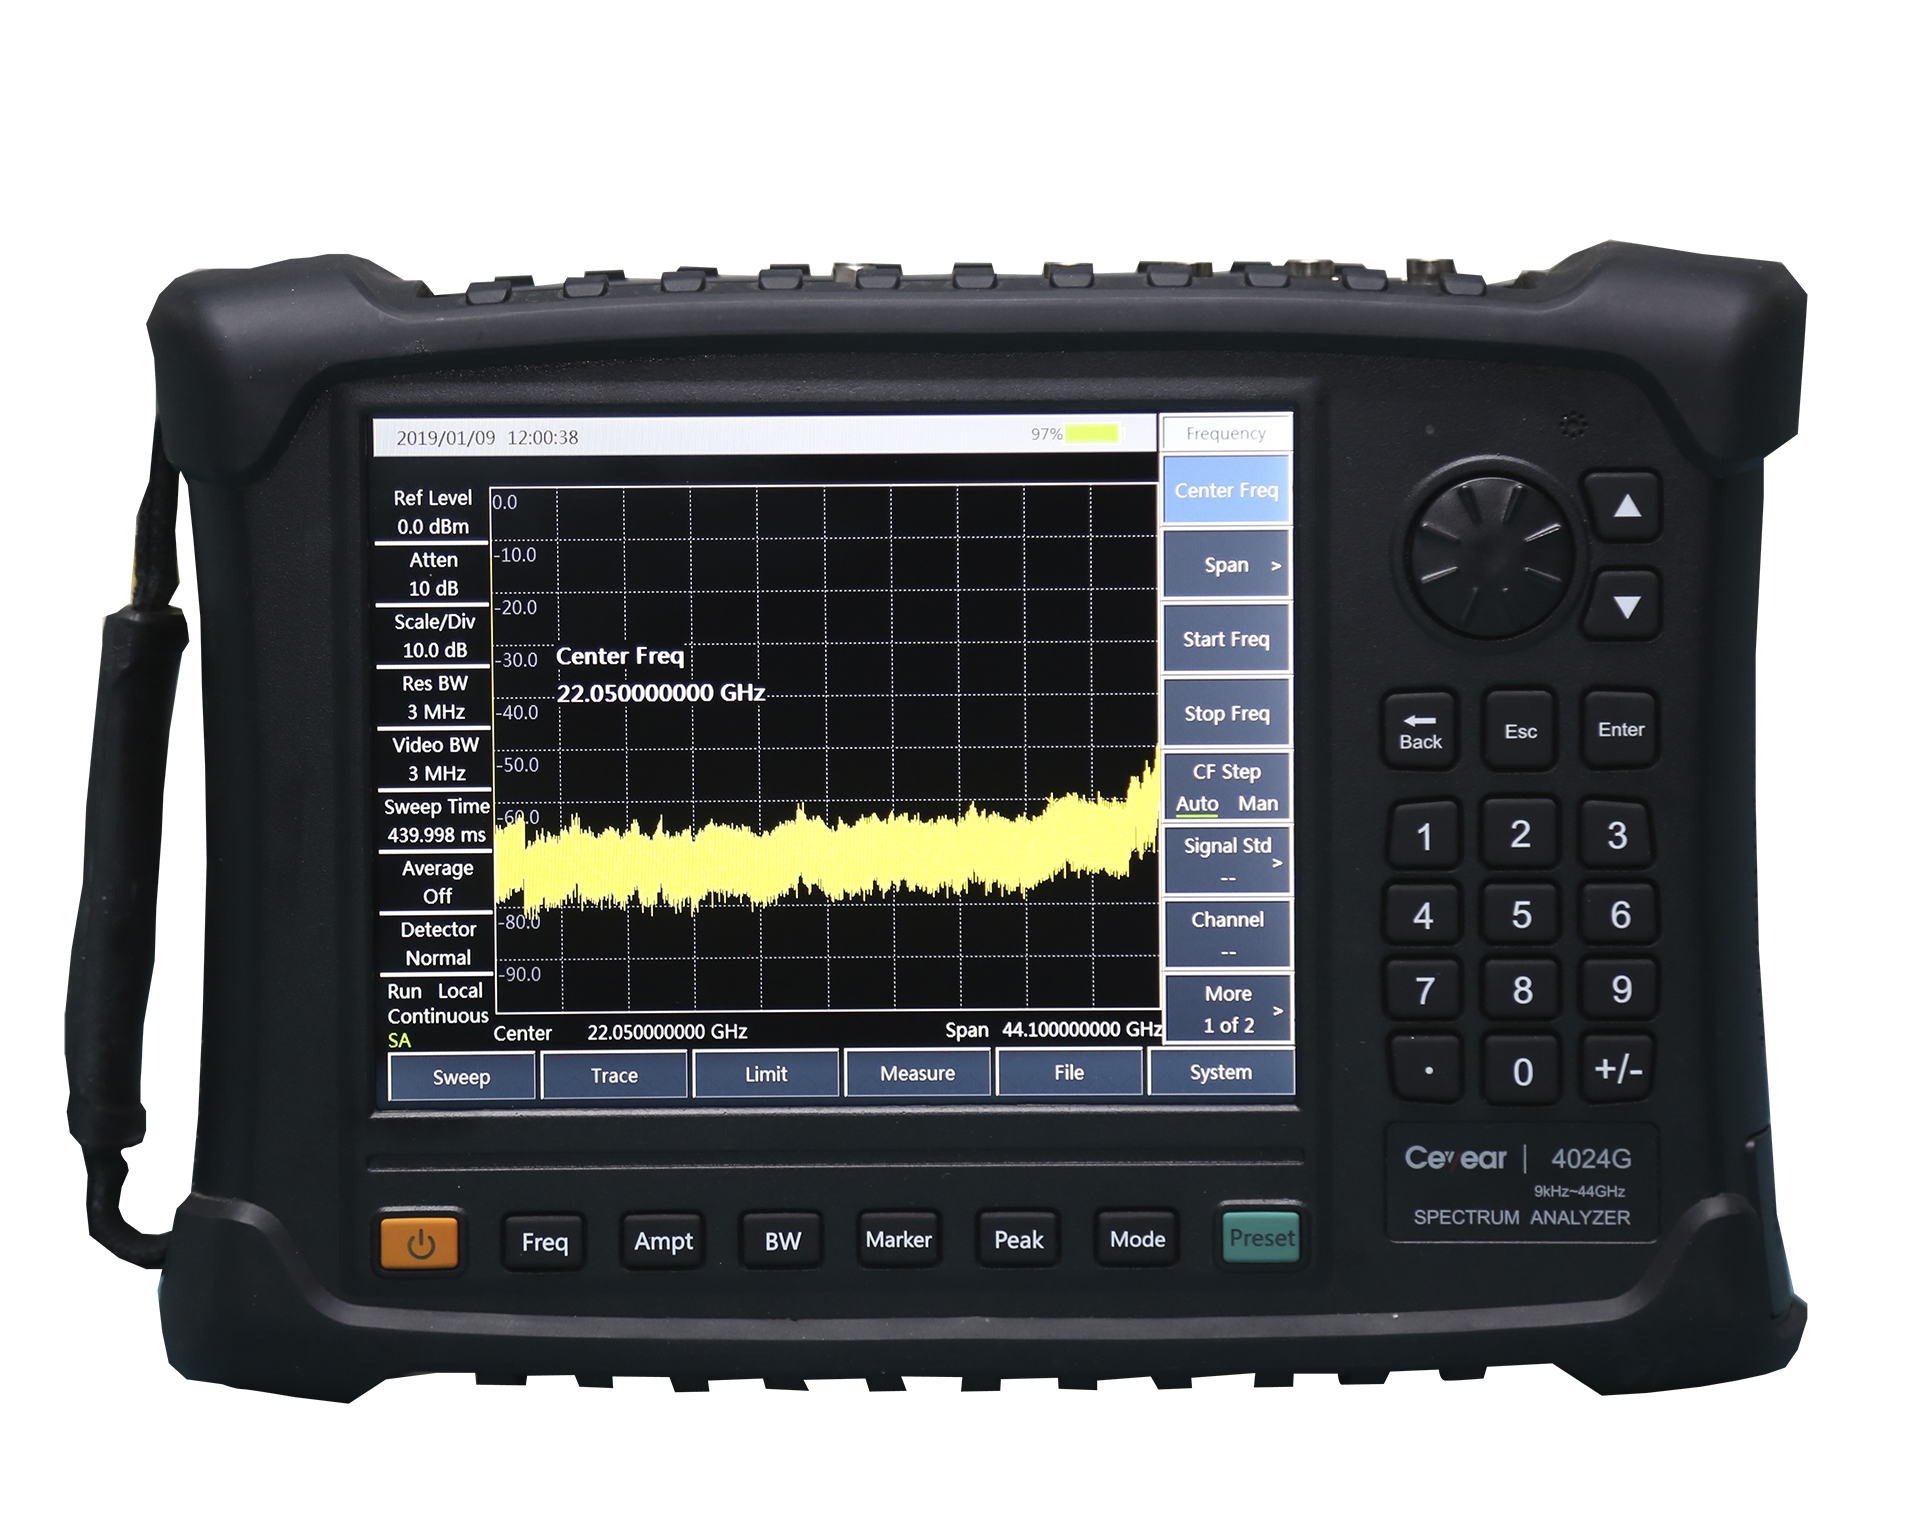 Портативный анализатор спектра
Ceyear 4024G
с диапазоном частот от 9 кГц до 44 ГГц

 В комплекте с опцией: 


	4024-30 — Жесткий кейс для переноски



